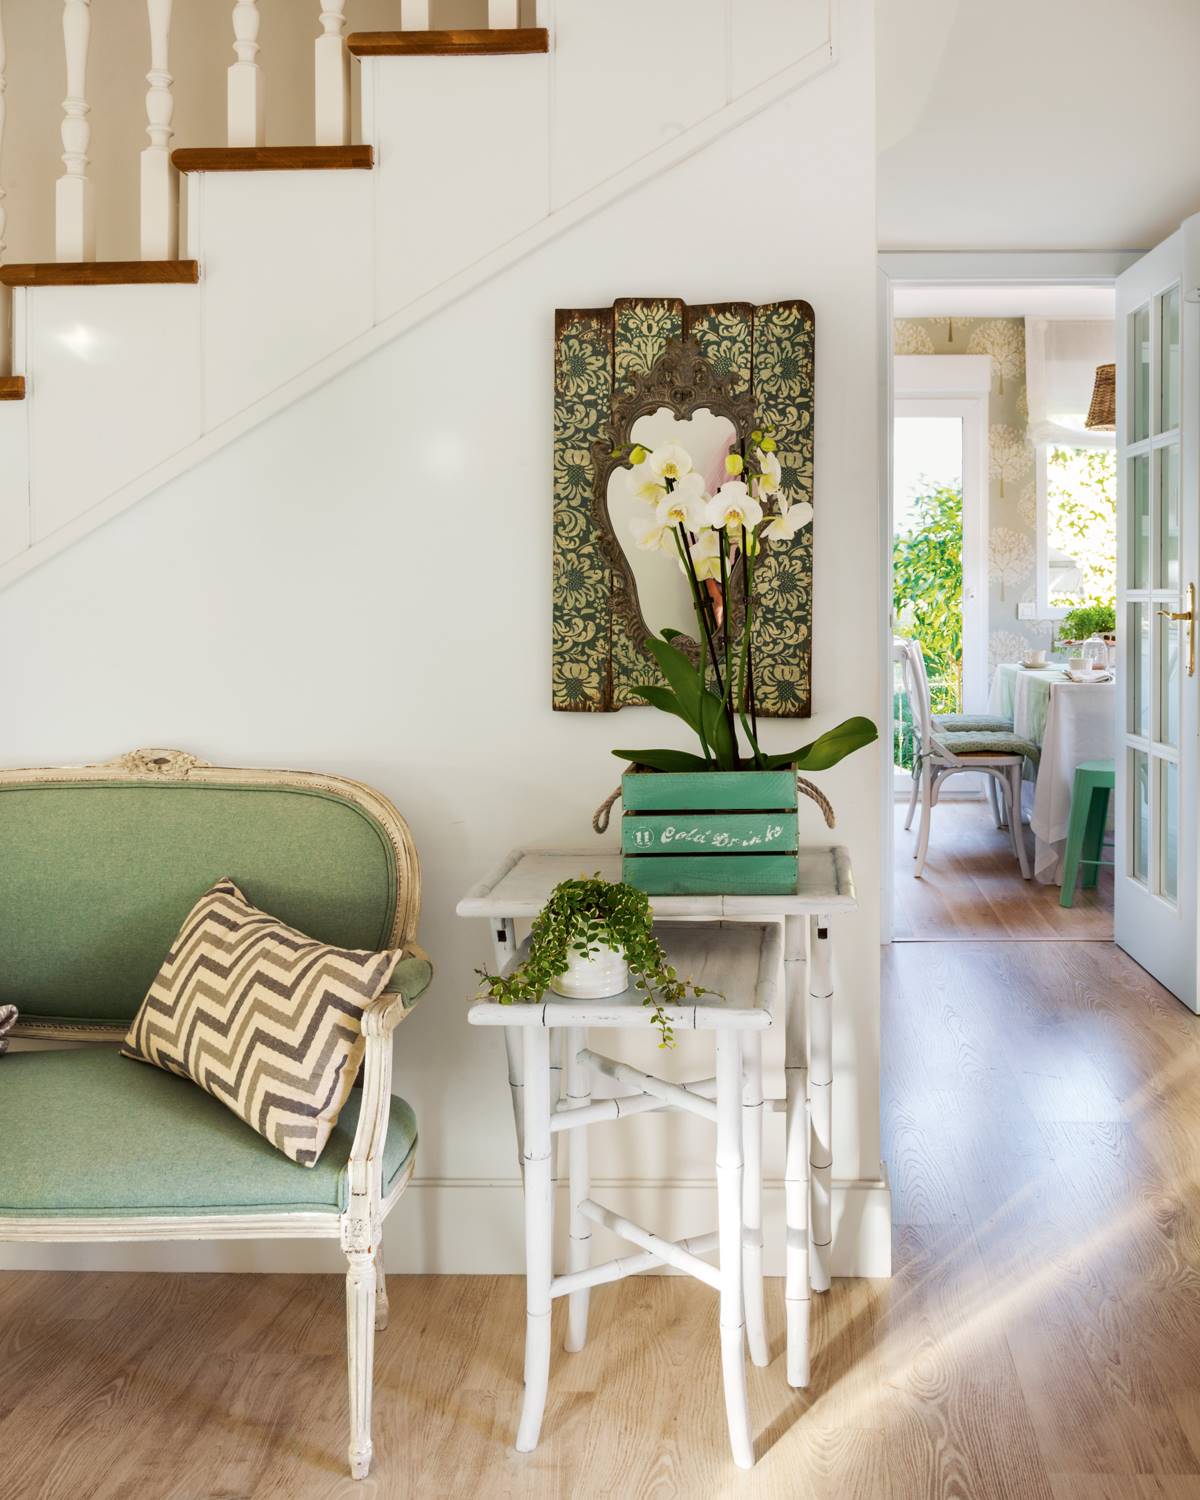 Recibidor con mesas nido, orquídeas y banco clásico tapizado en verde 00412626